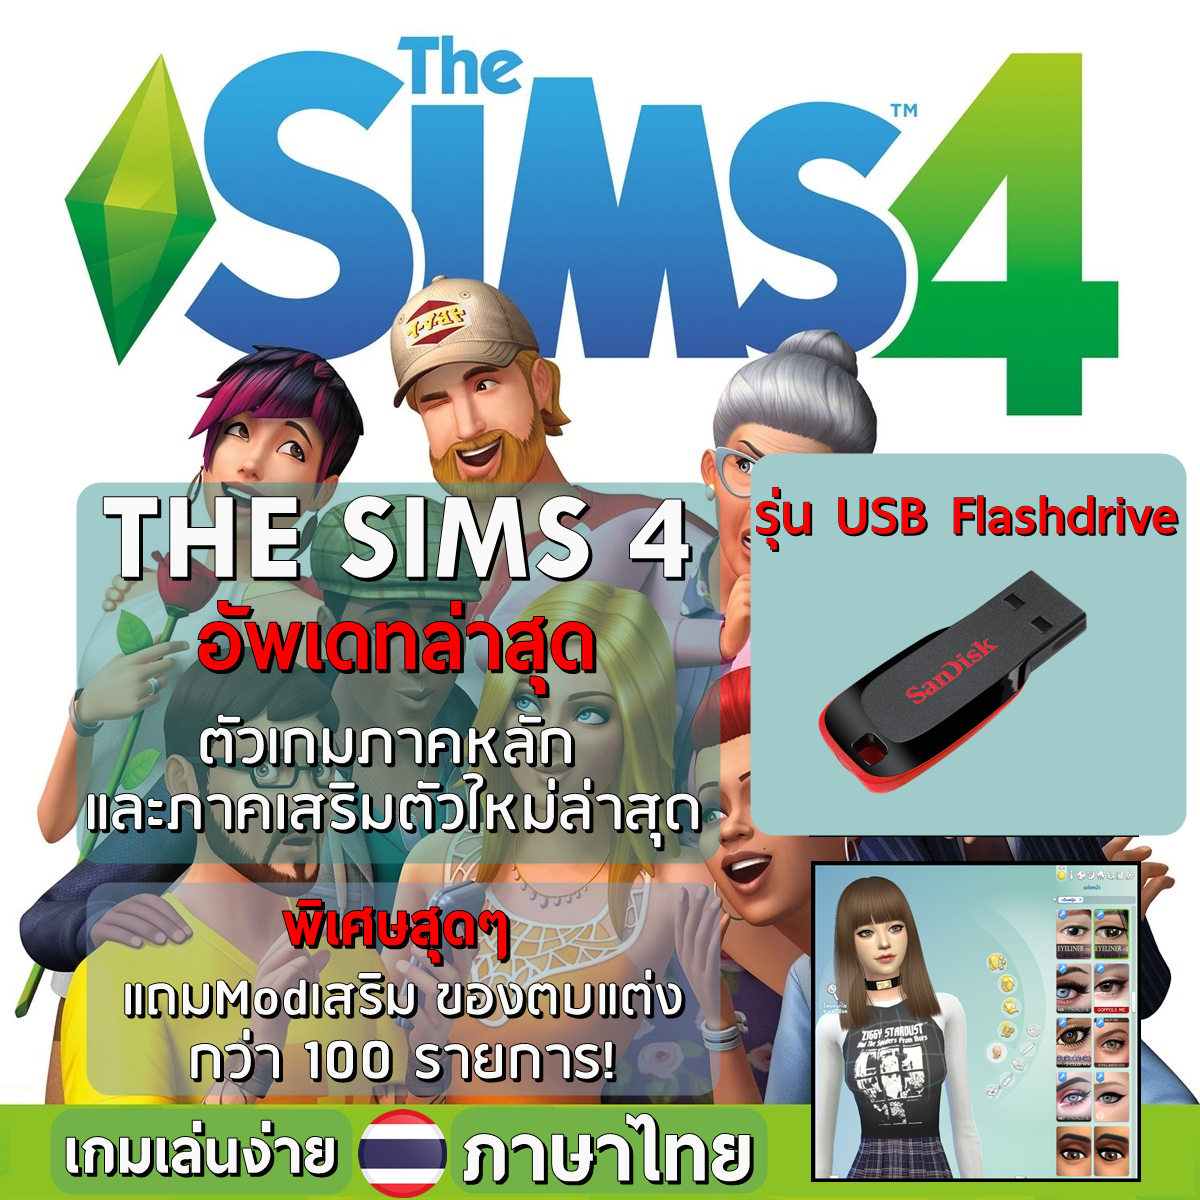 เกมส์ PC - The Sims 4 : ภาคใหม่ล่าสุด ภาคหลัก+ภาคเสริม | รุ่น USB FlashDrive ติดตั้งผ่าน Flash Drive | แผ่นเกม คอมพิวเตอร์ PC Game